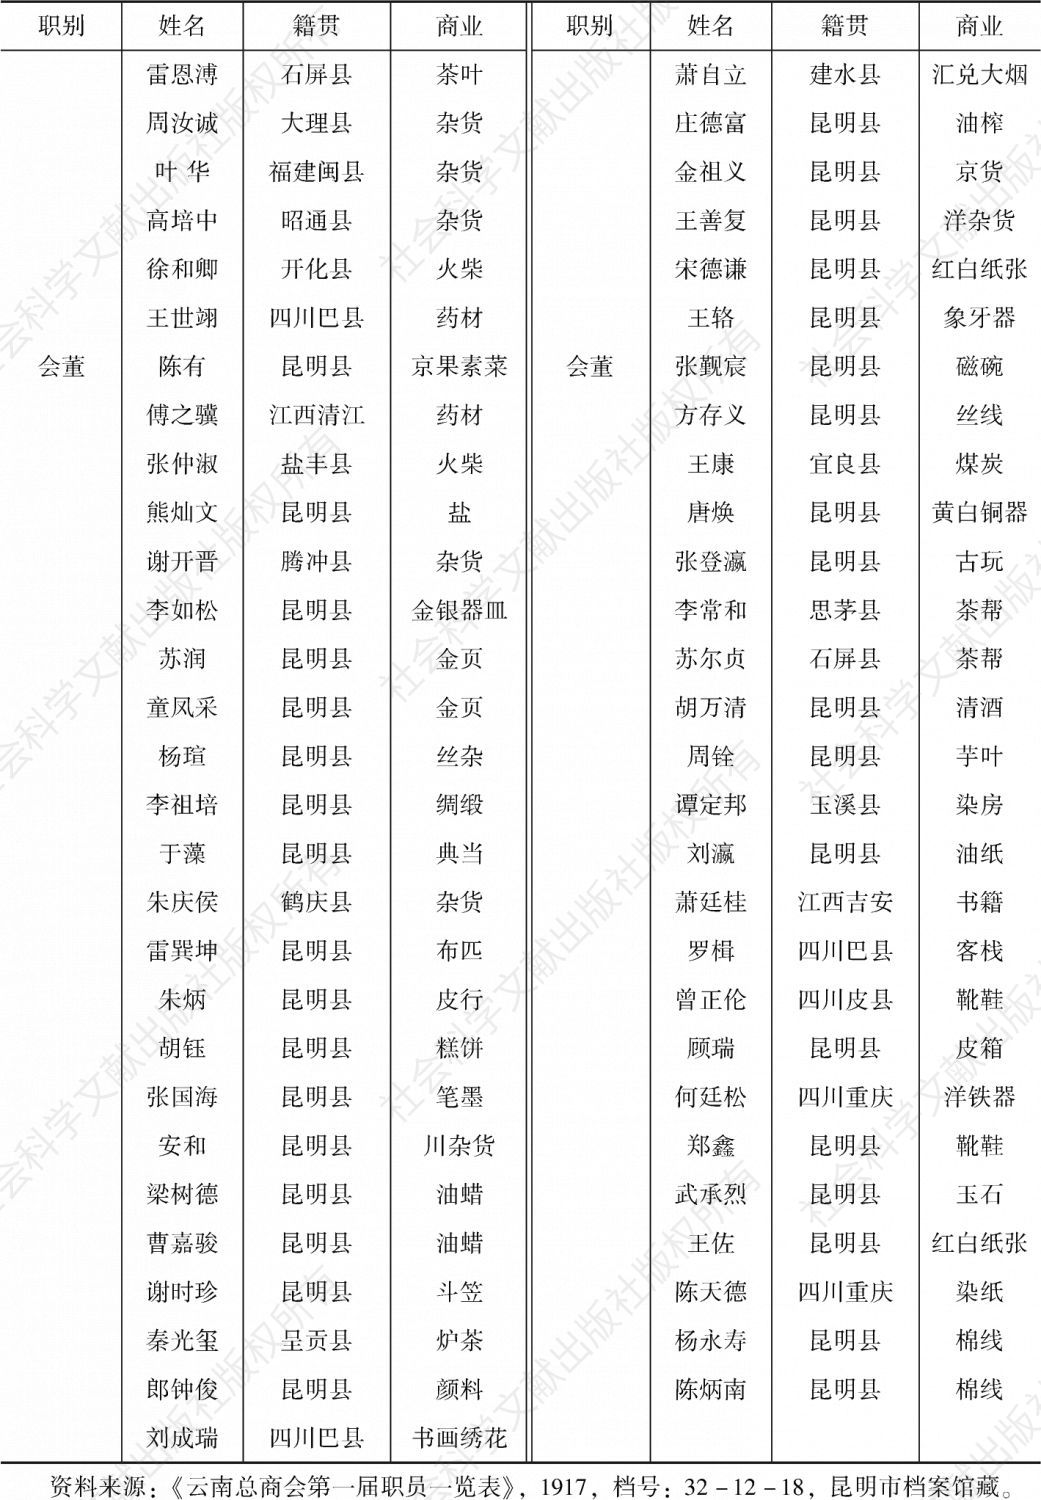 表2-2 1917年云南总商会第一届职员一览表-续表